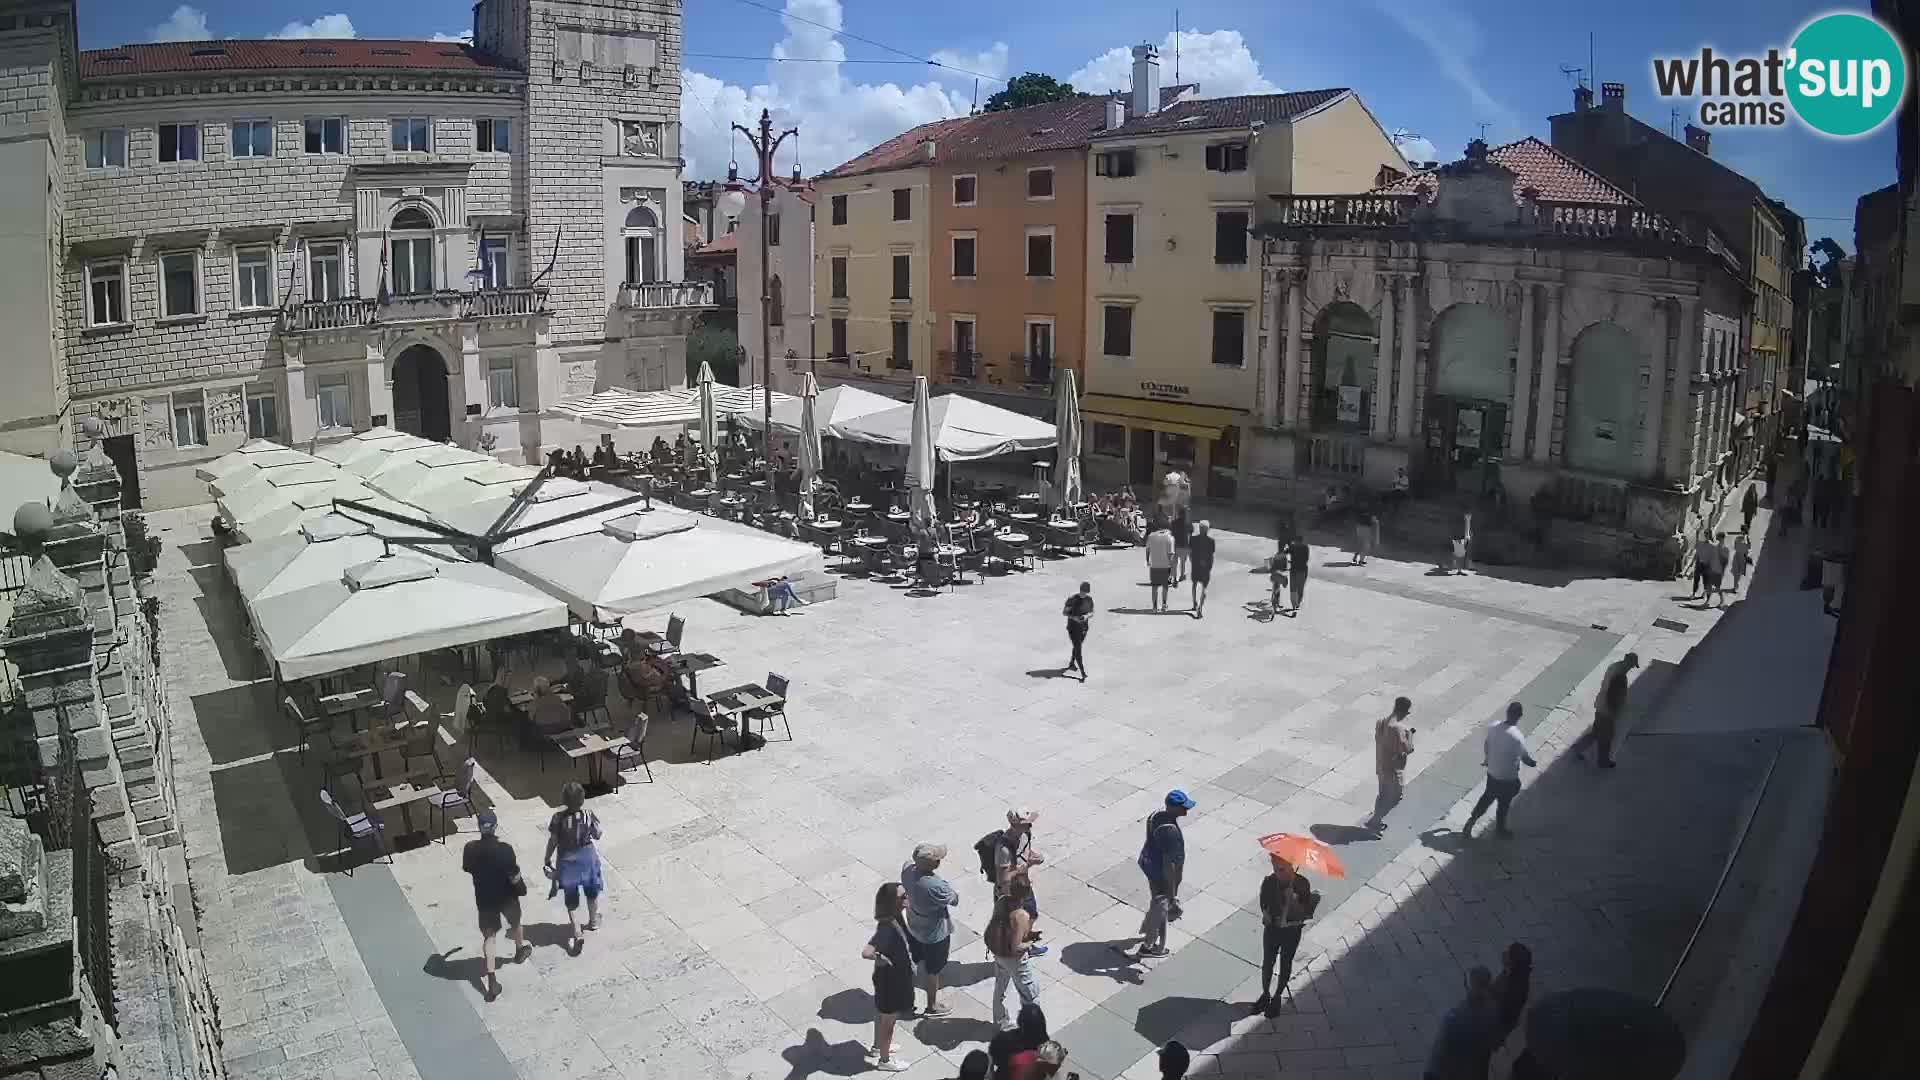 Zadar – Narodni trg – “Place du Peuple”